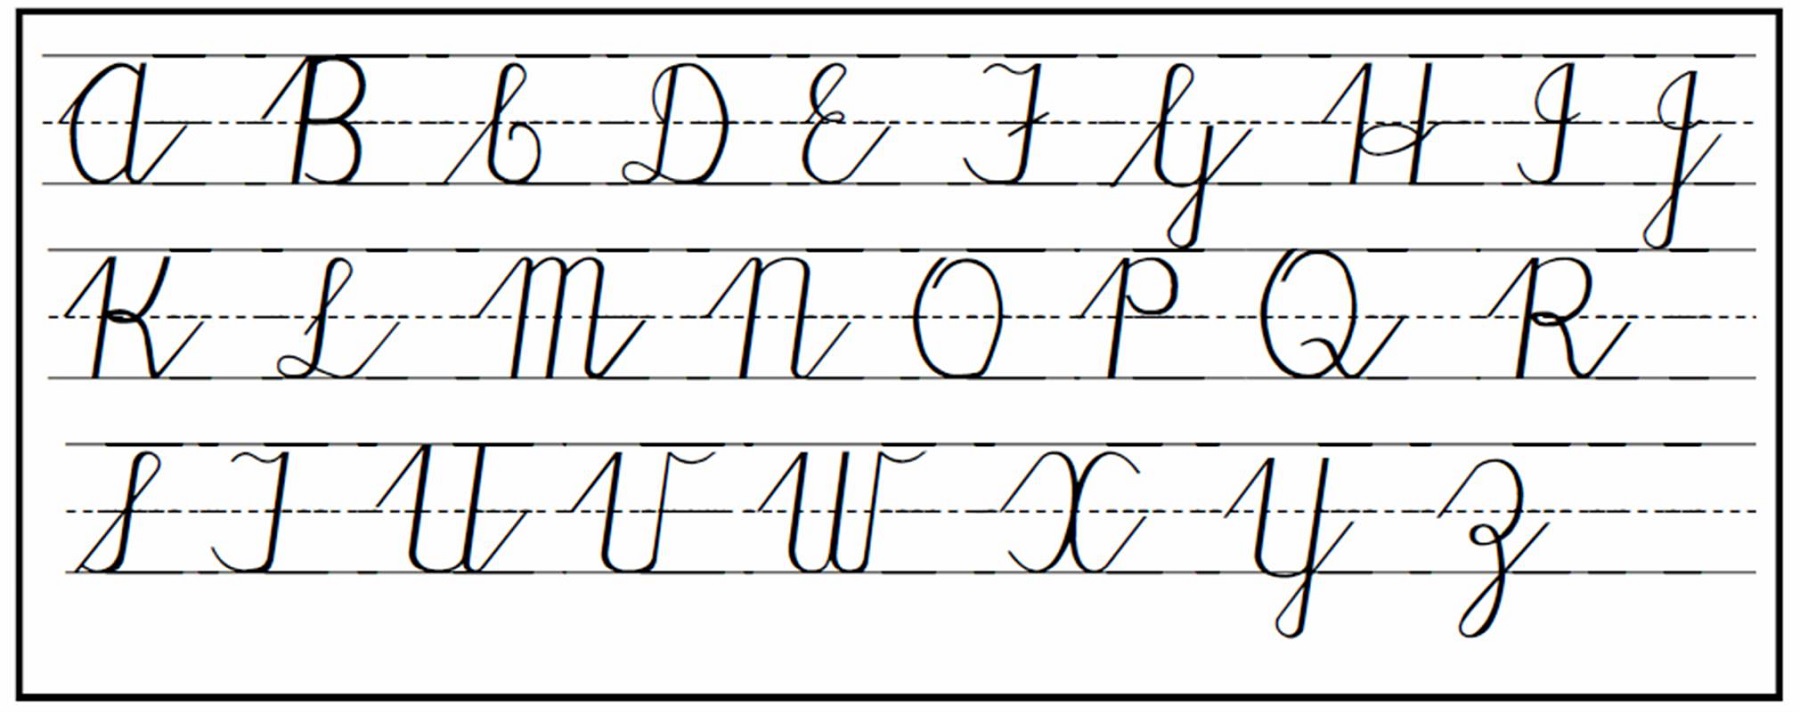 upper case alphabet cursive